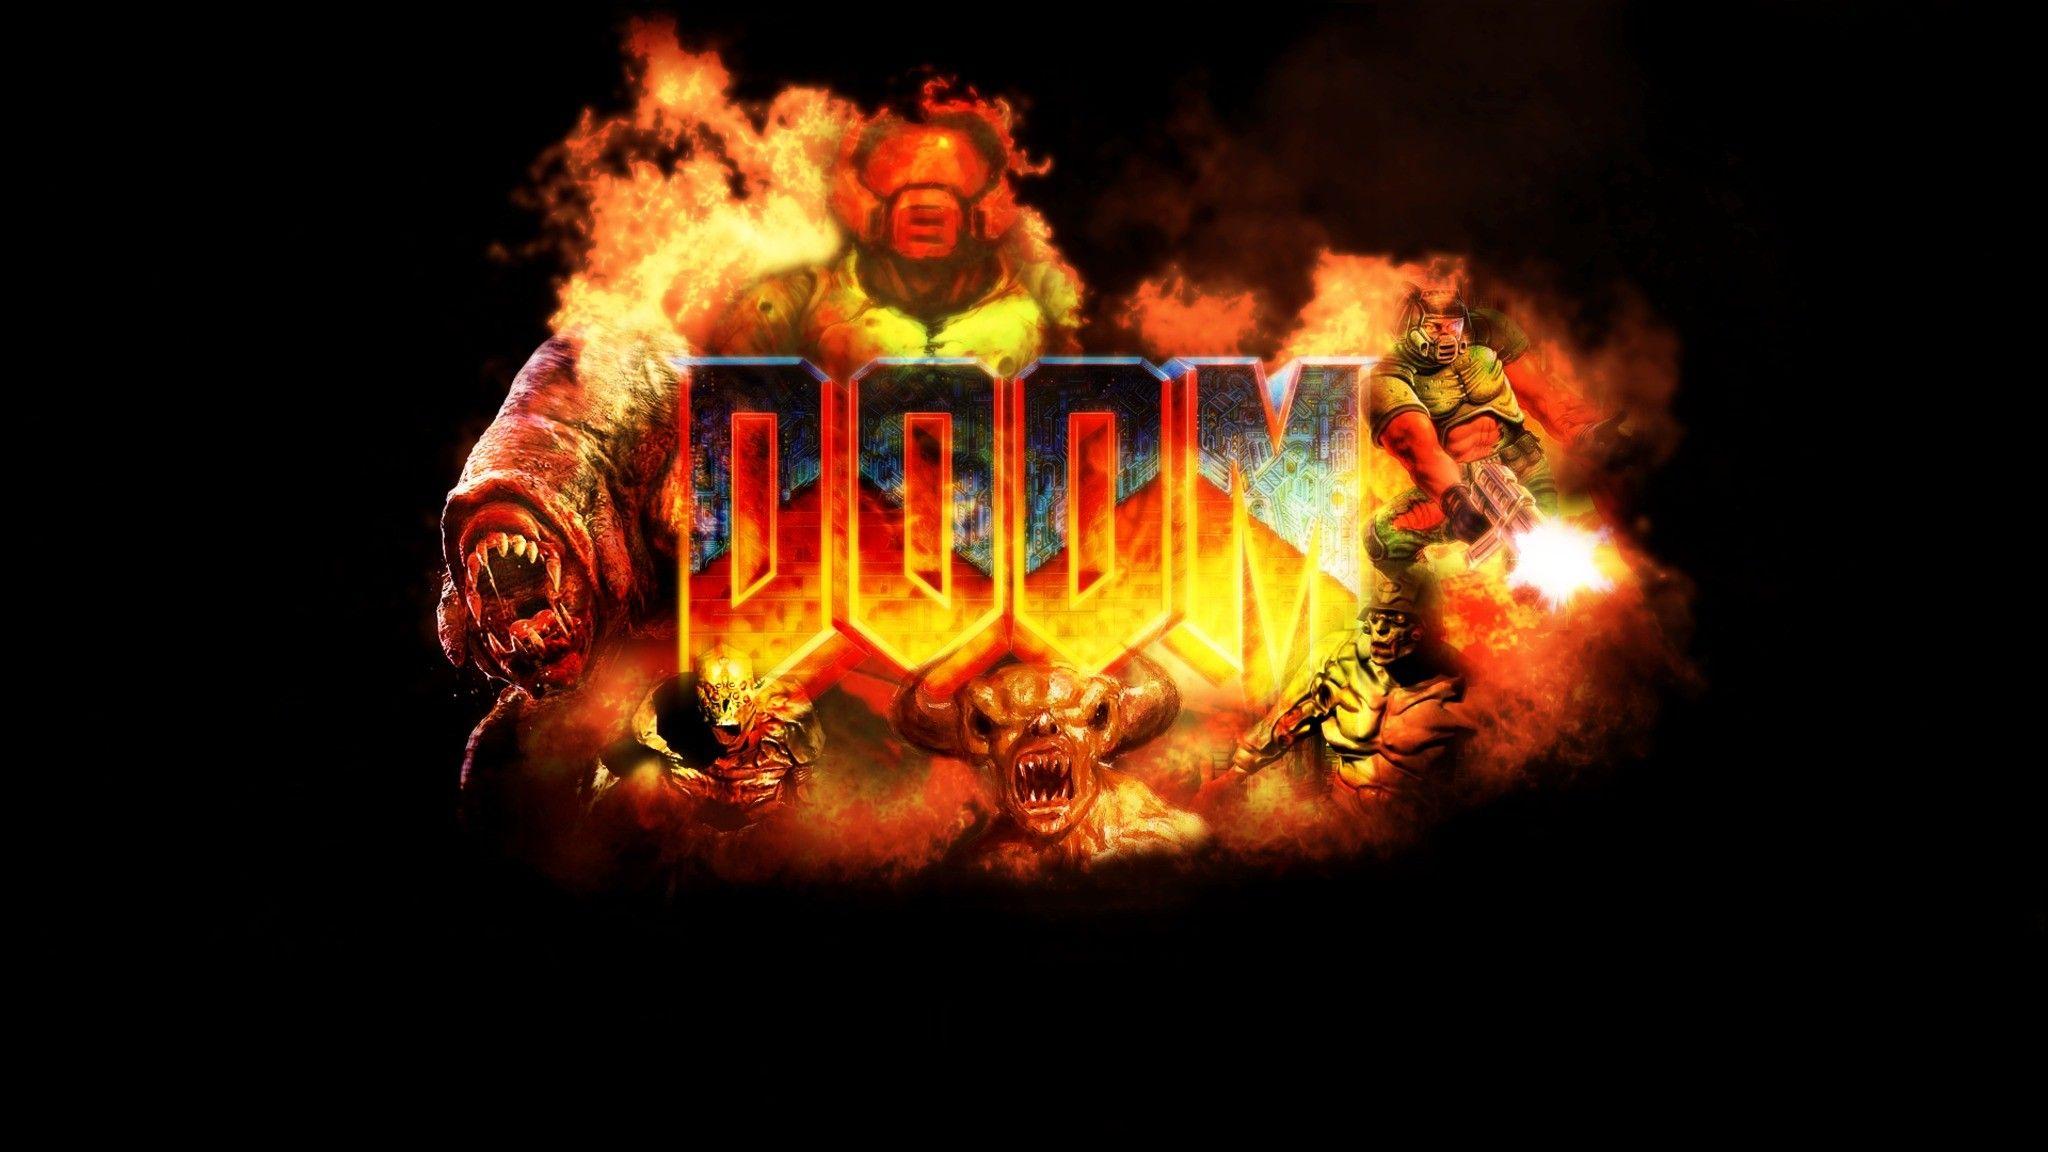 in 2019. Gaming wallpaper, Doom game, Wallpaper